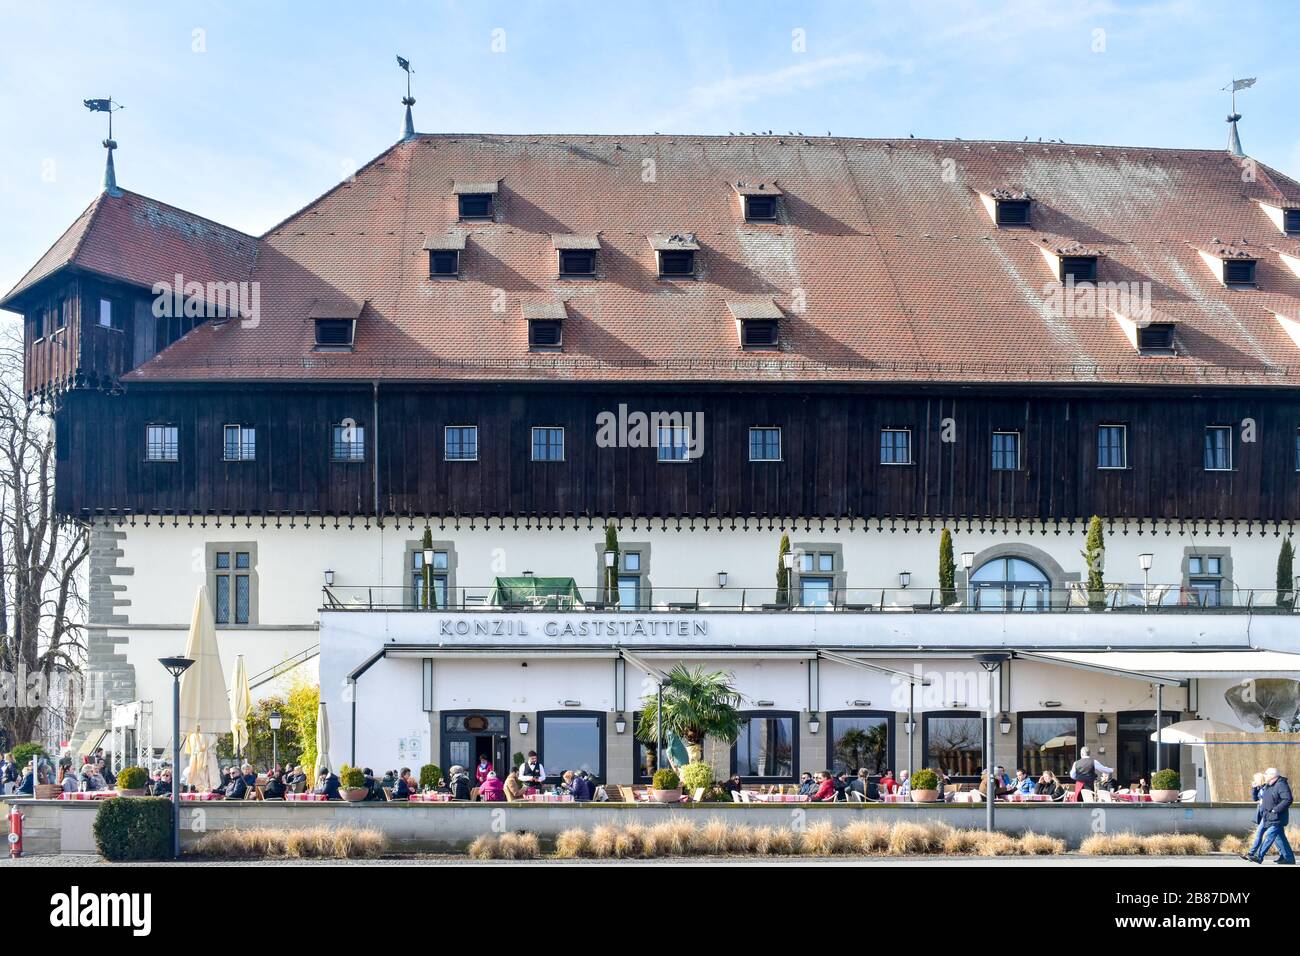 Konstanz, Alemania - 15 de febrero de 2020: El Consejo de Constanza. Foto de stock